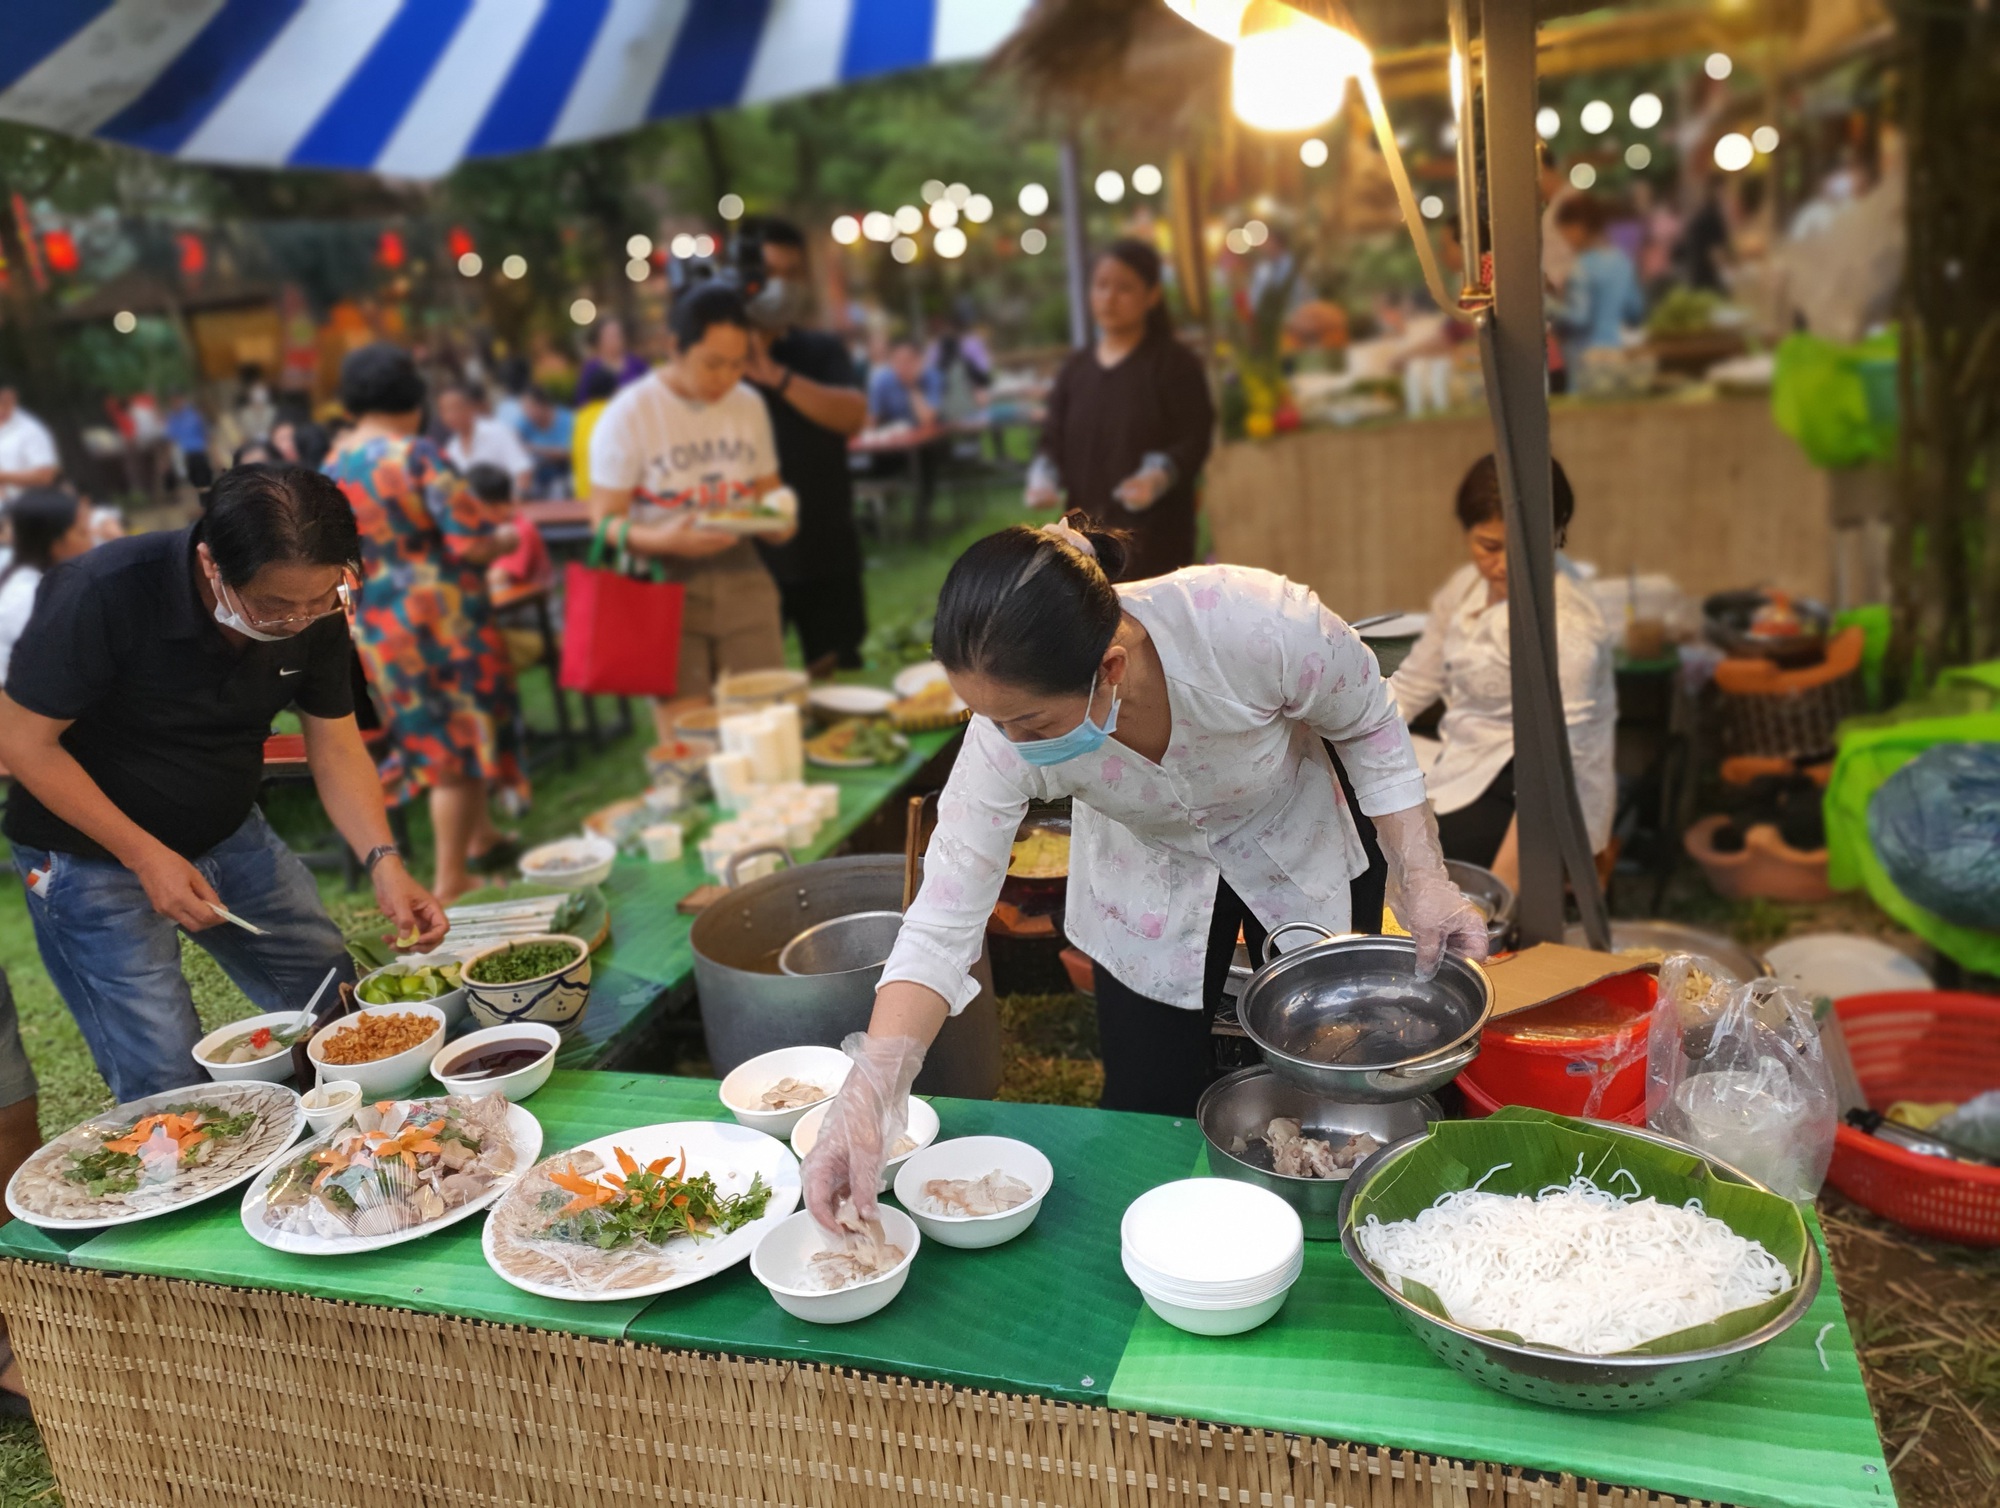 Hãy cùng tìm hiểu những món ăn ngon tuyệt của lễ hội ẩm thực để khám phá nền văn hóa đặc sắc của Việt Nam. Từ bánh tráng cuốn thịt heo đến chả giò tôm, hương vị tuyệt vời này chắc chắn sẽ khiến bạn muốn thưởng thức ngay lập tức.